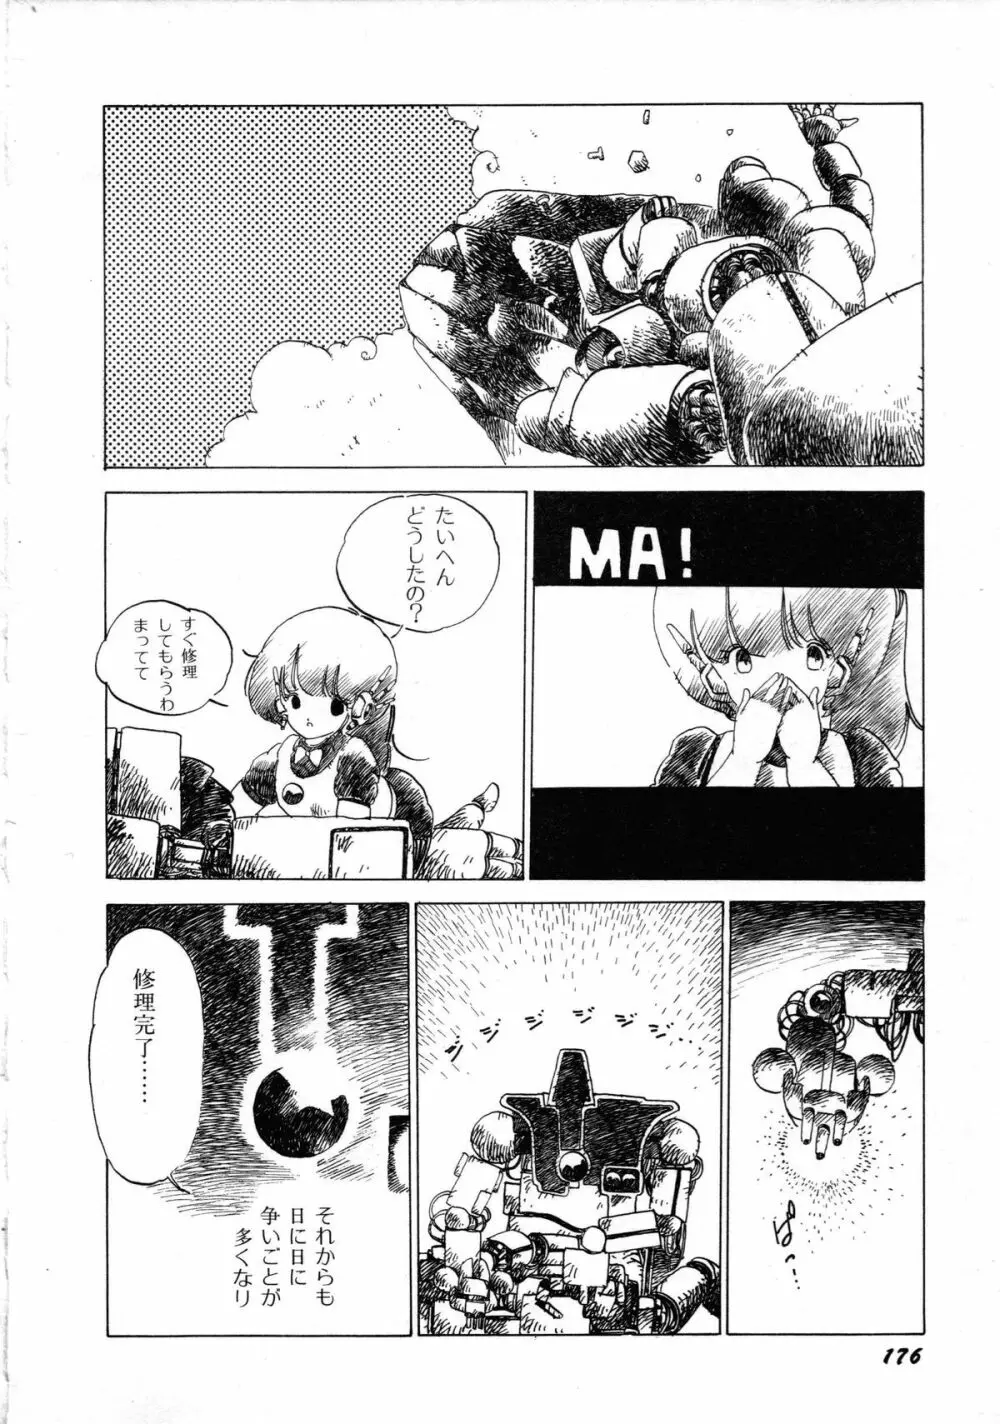 ロボット&美少女傑作選 レモン・ピープル1982-1986 180ページ